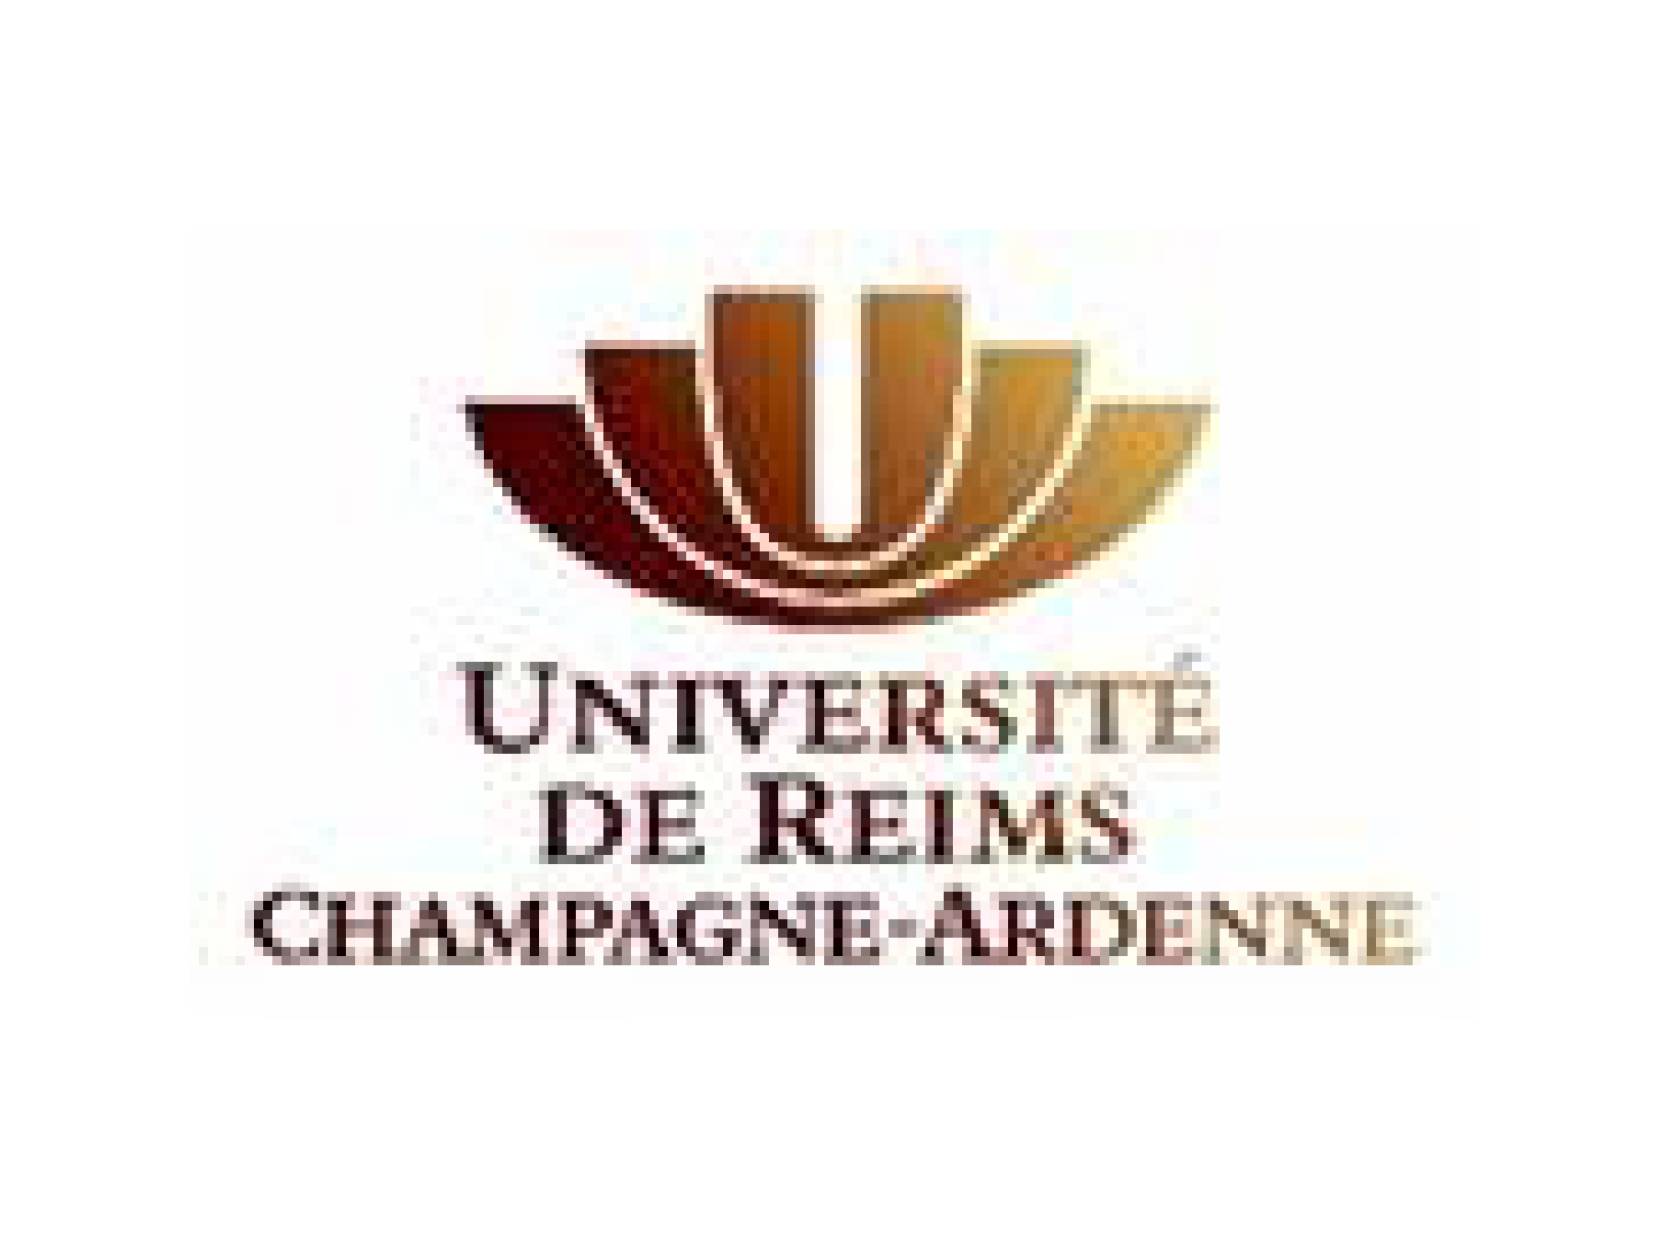 Logo de l'Université de Reims Champagne - Ardenne